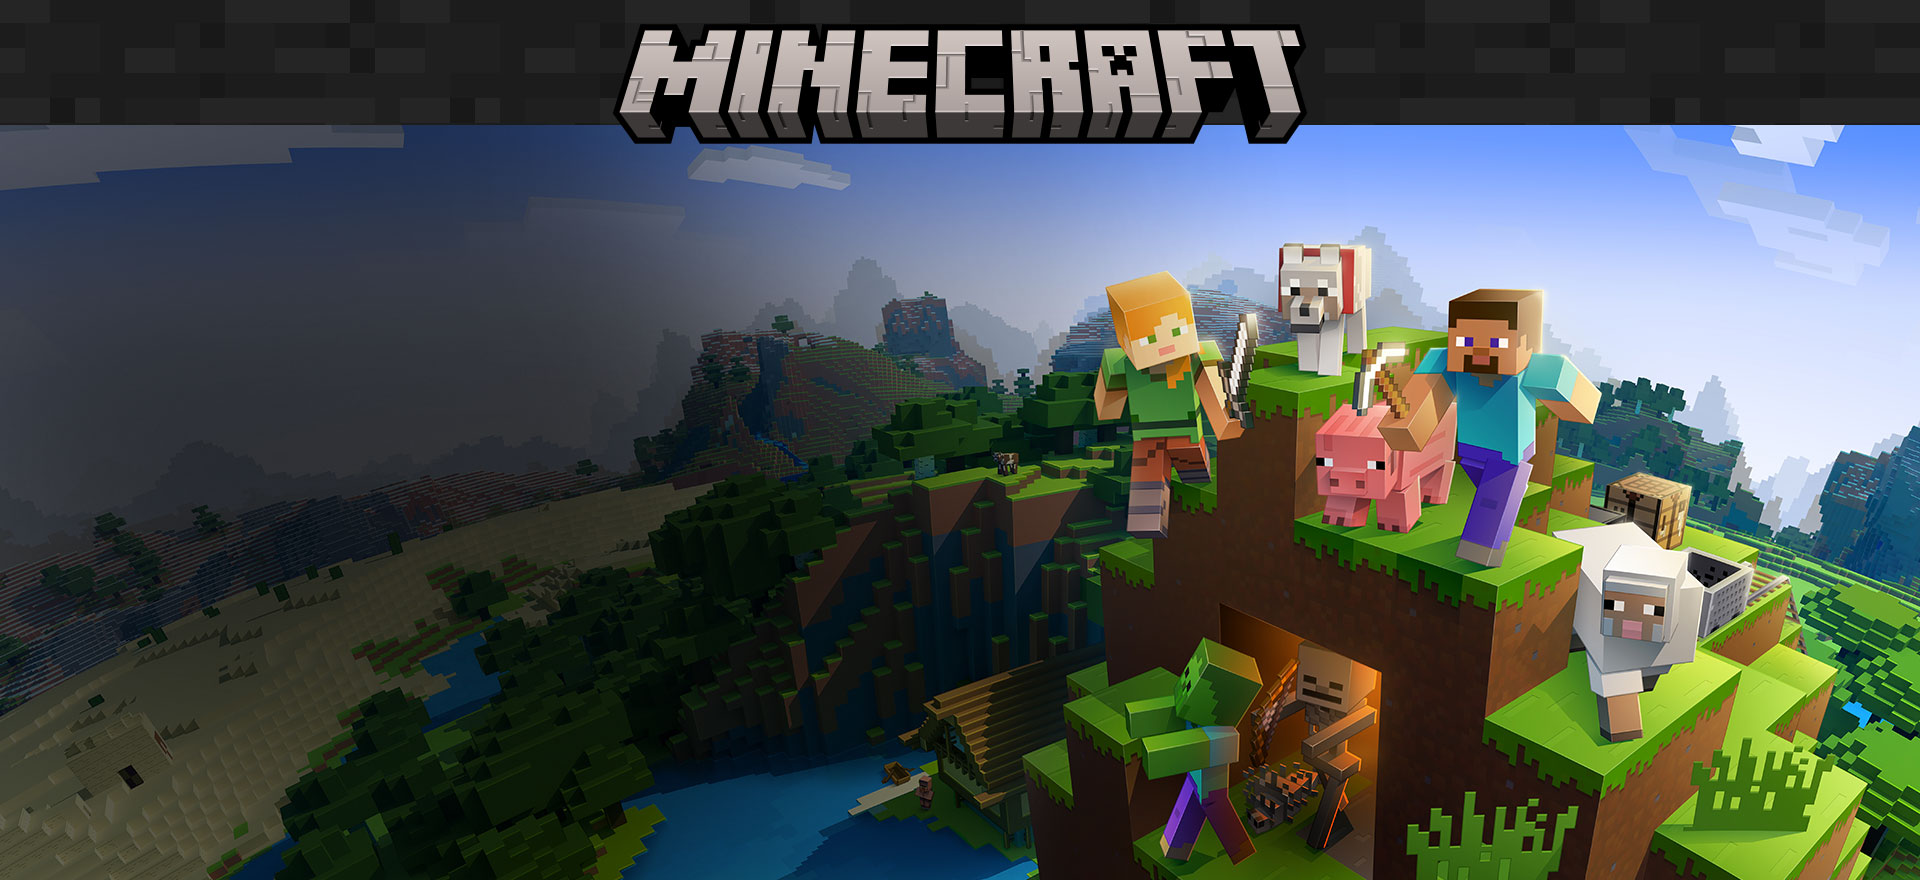 Logotipo do Minecraft com personagens do jogo em um fundo do ambiente de blocos